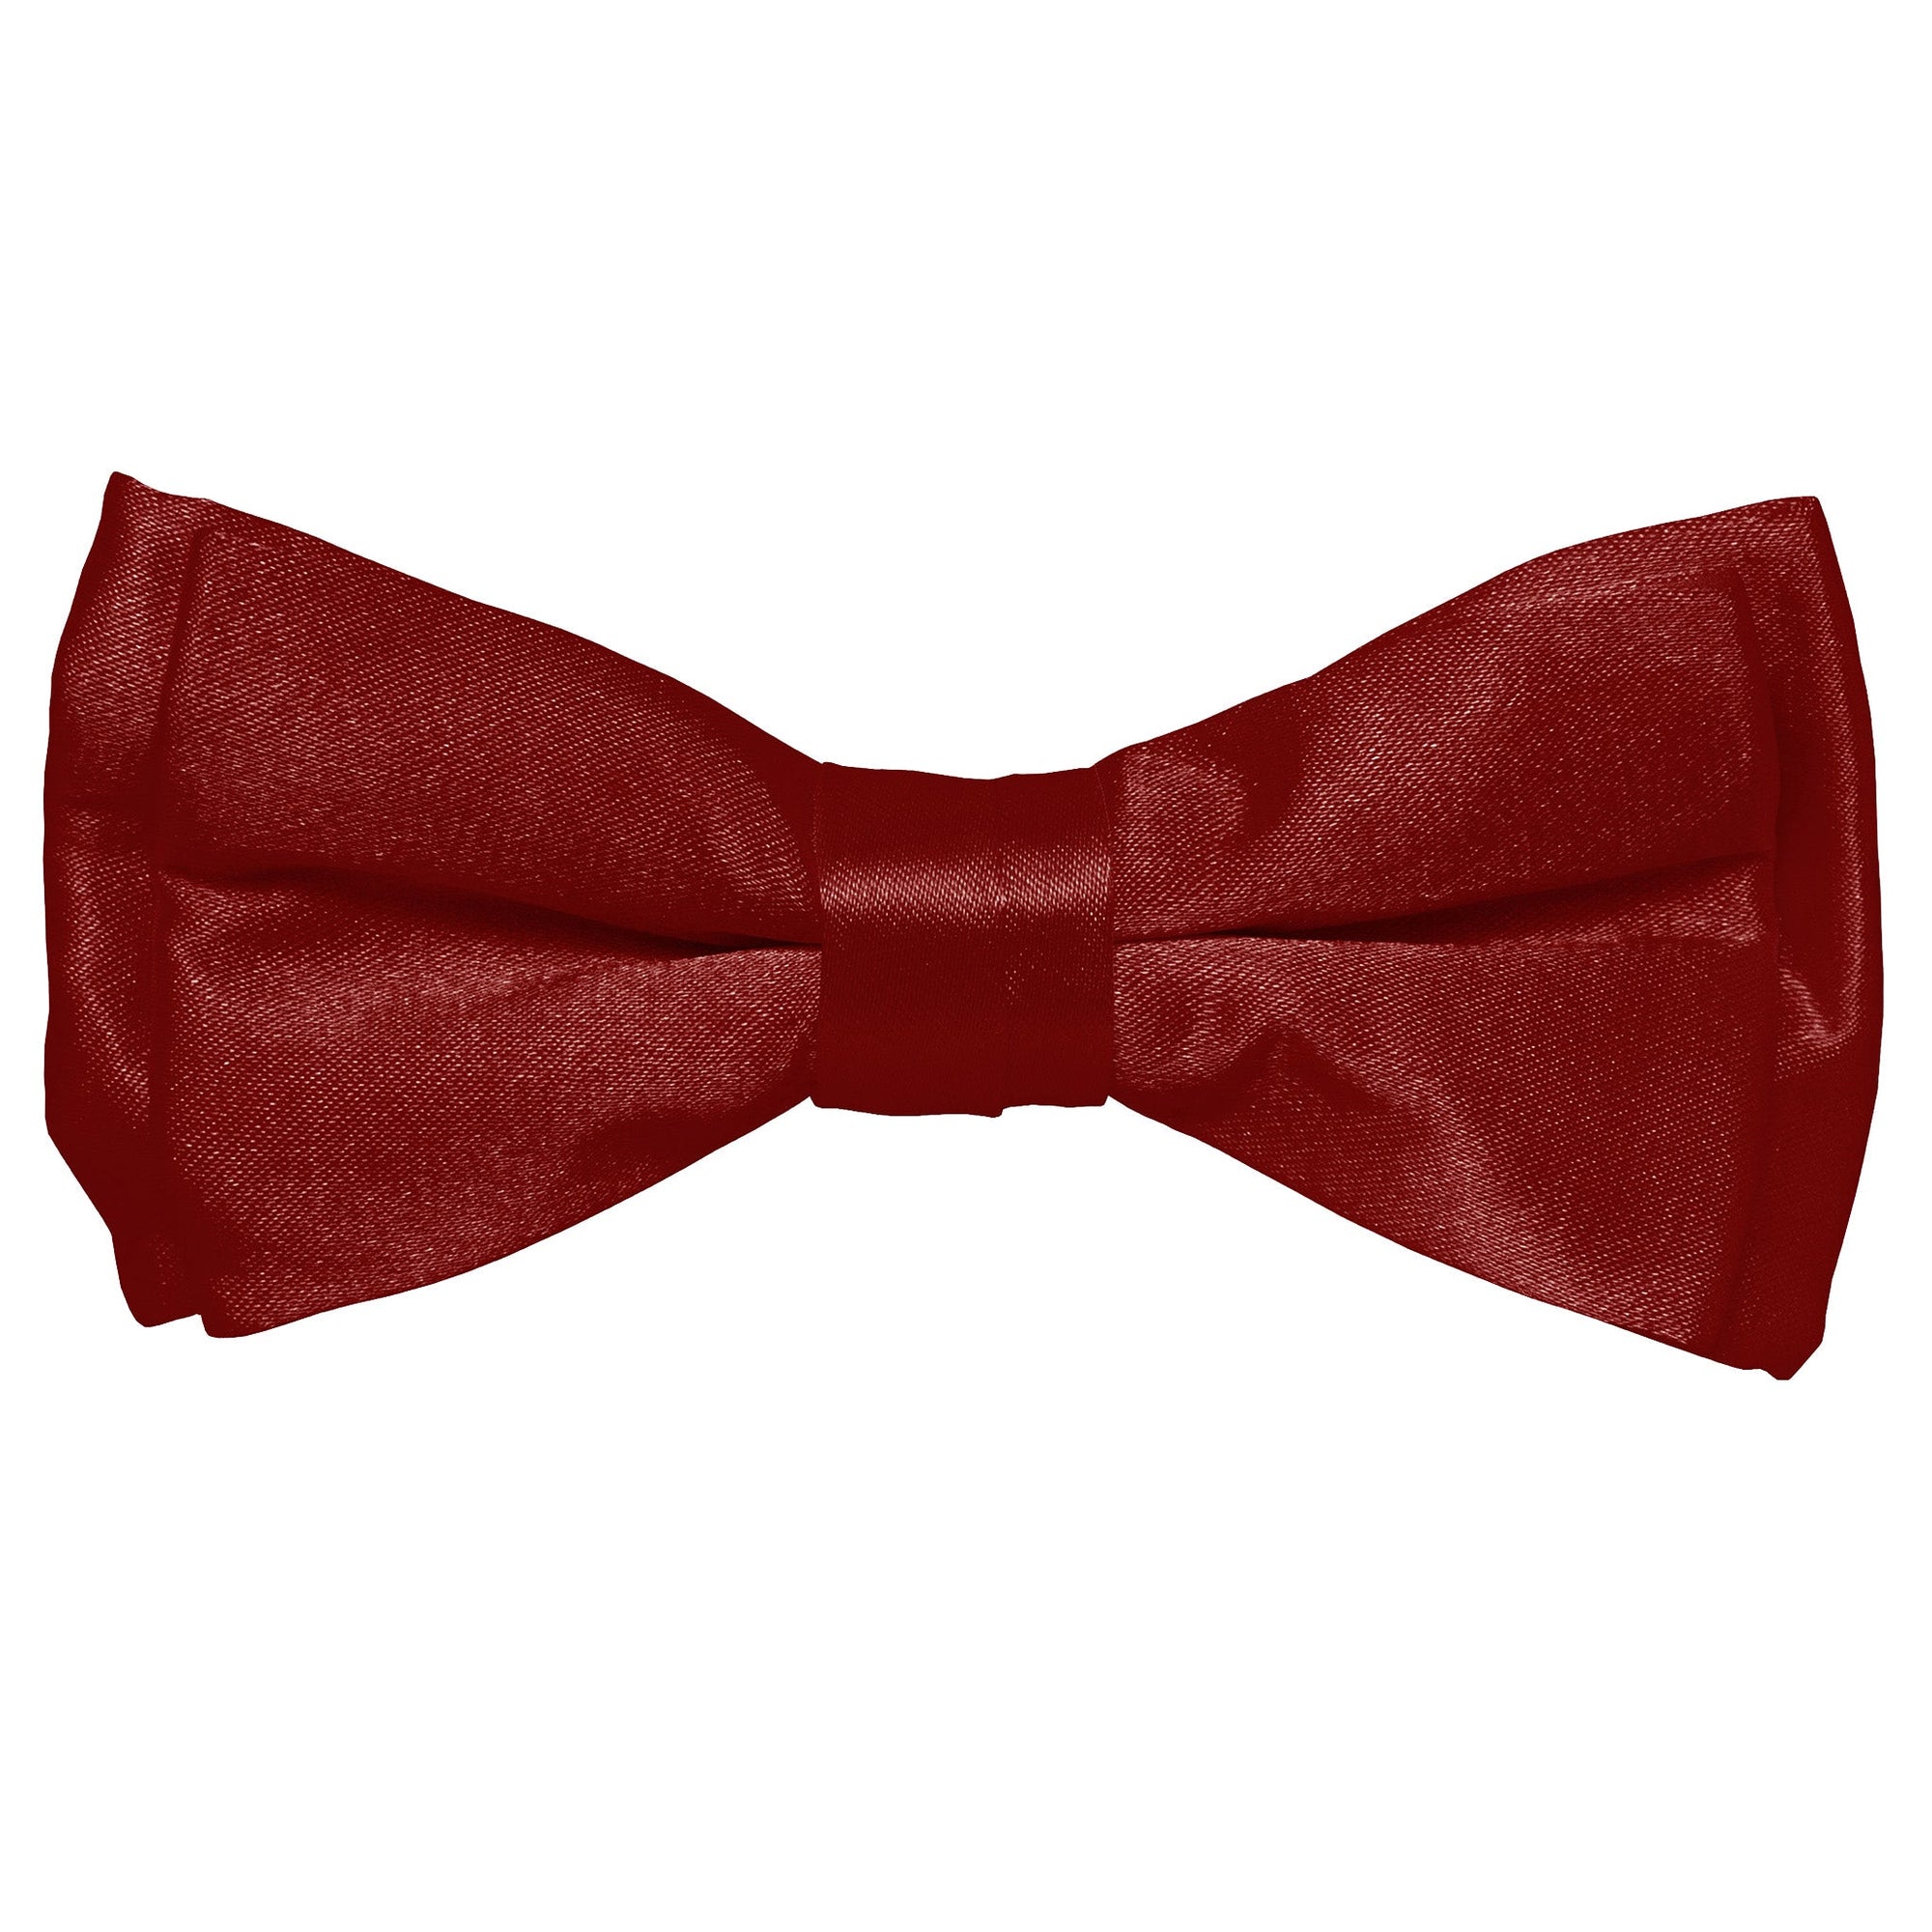 Vittorio Farina Boy's Solid Silky Bow Tie by Classy Cufflinks - boys-burgundy - Classy Cufflinks